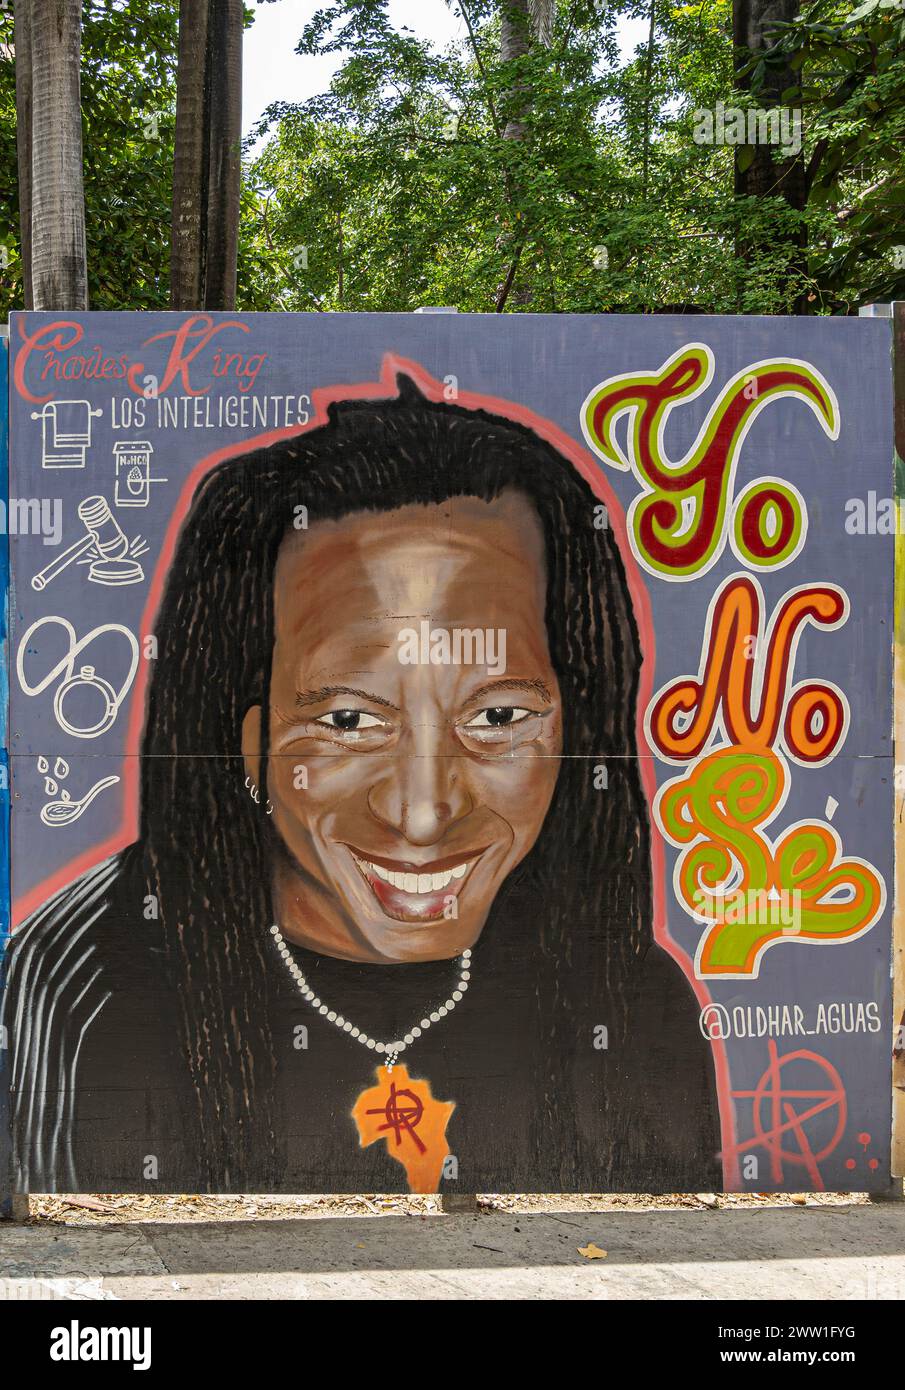 Cartagena, Kolumbien - 25. Juli 2023: Plaza de Bolivar und Park. 6 Street Graffiti an Bord, rund um den Park, Carrera 3A. Charles King, Los inteligen Stockfoto